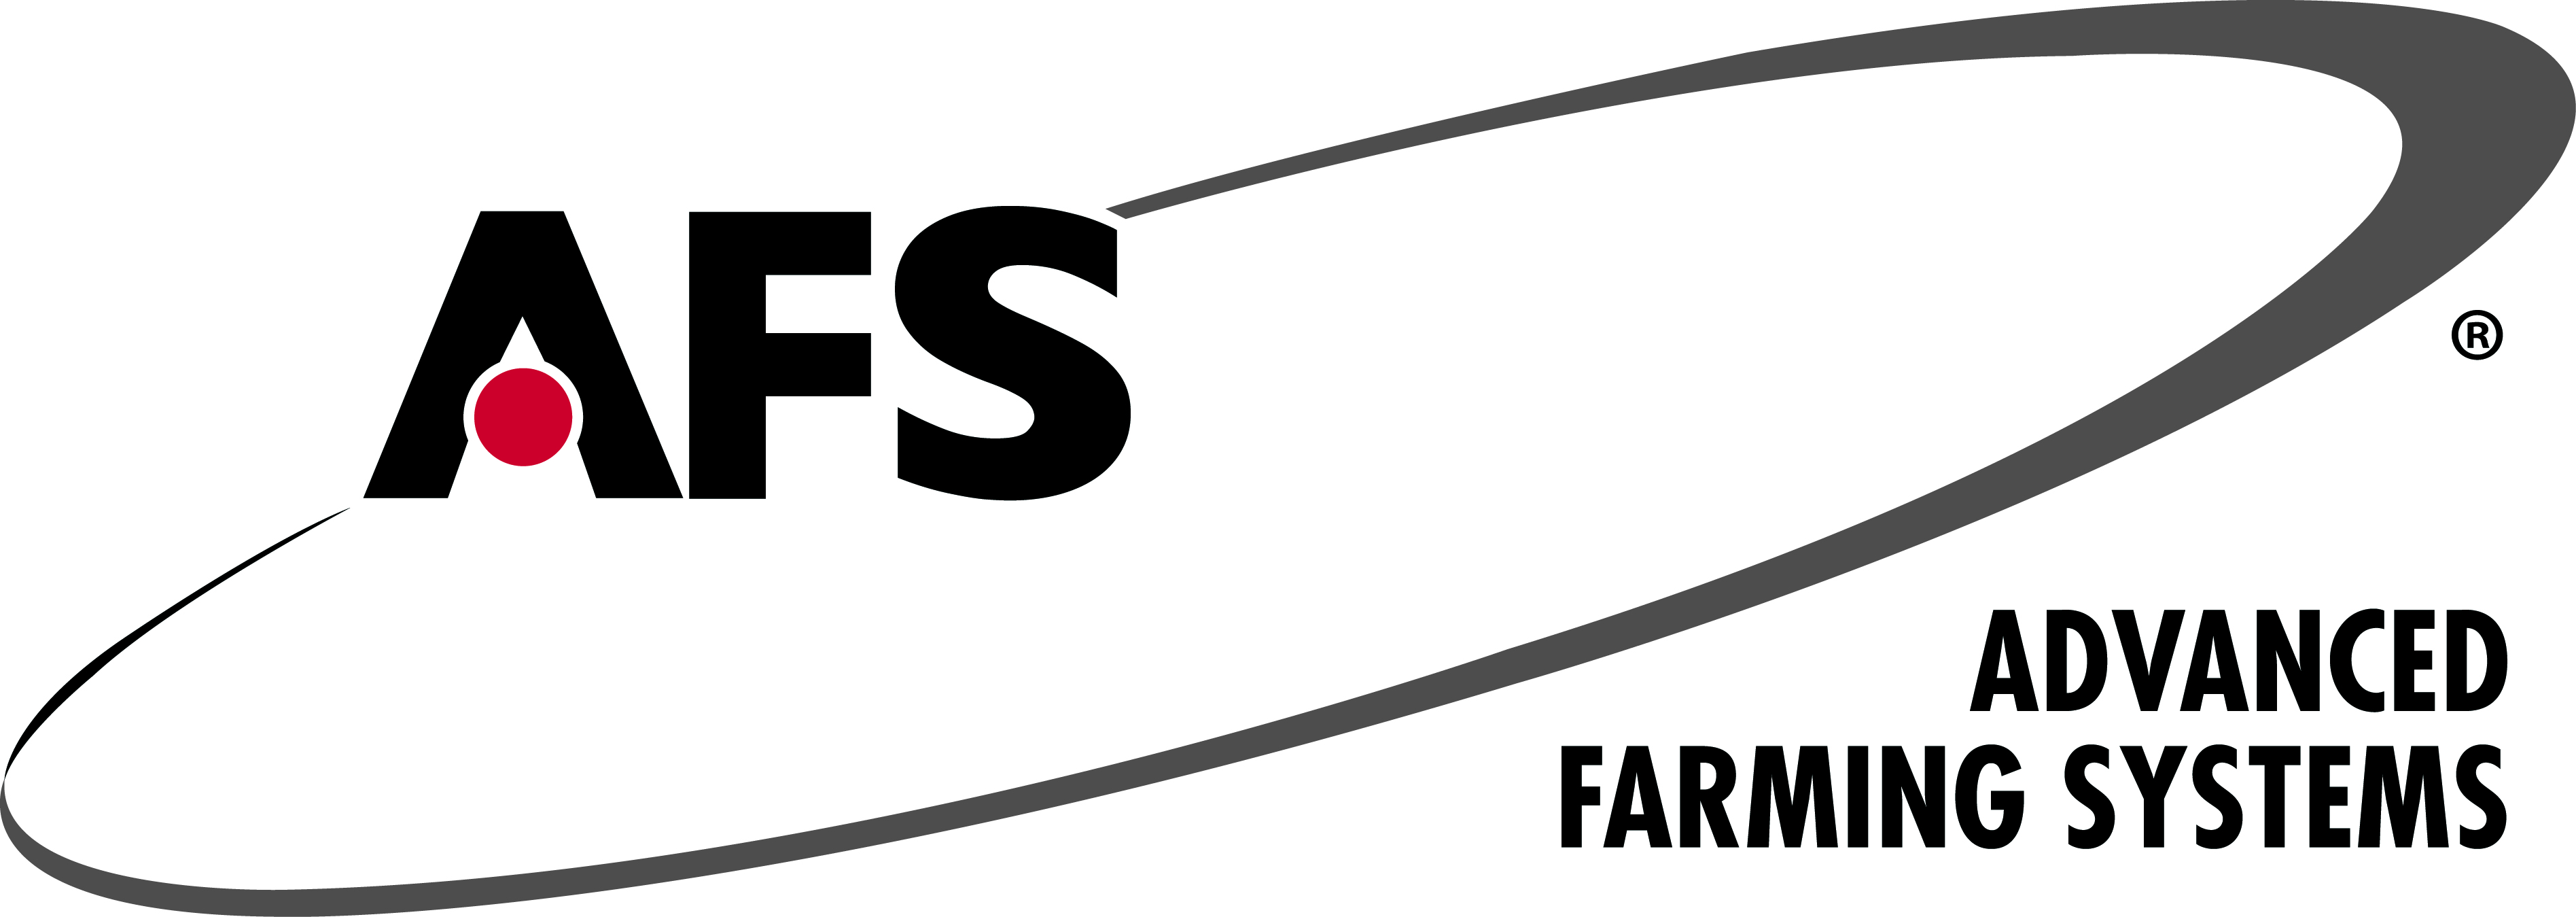 afs advanced farming systems logo jpg